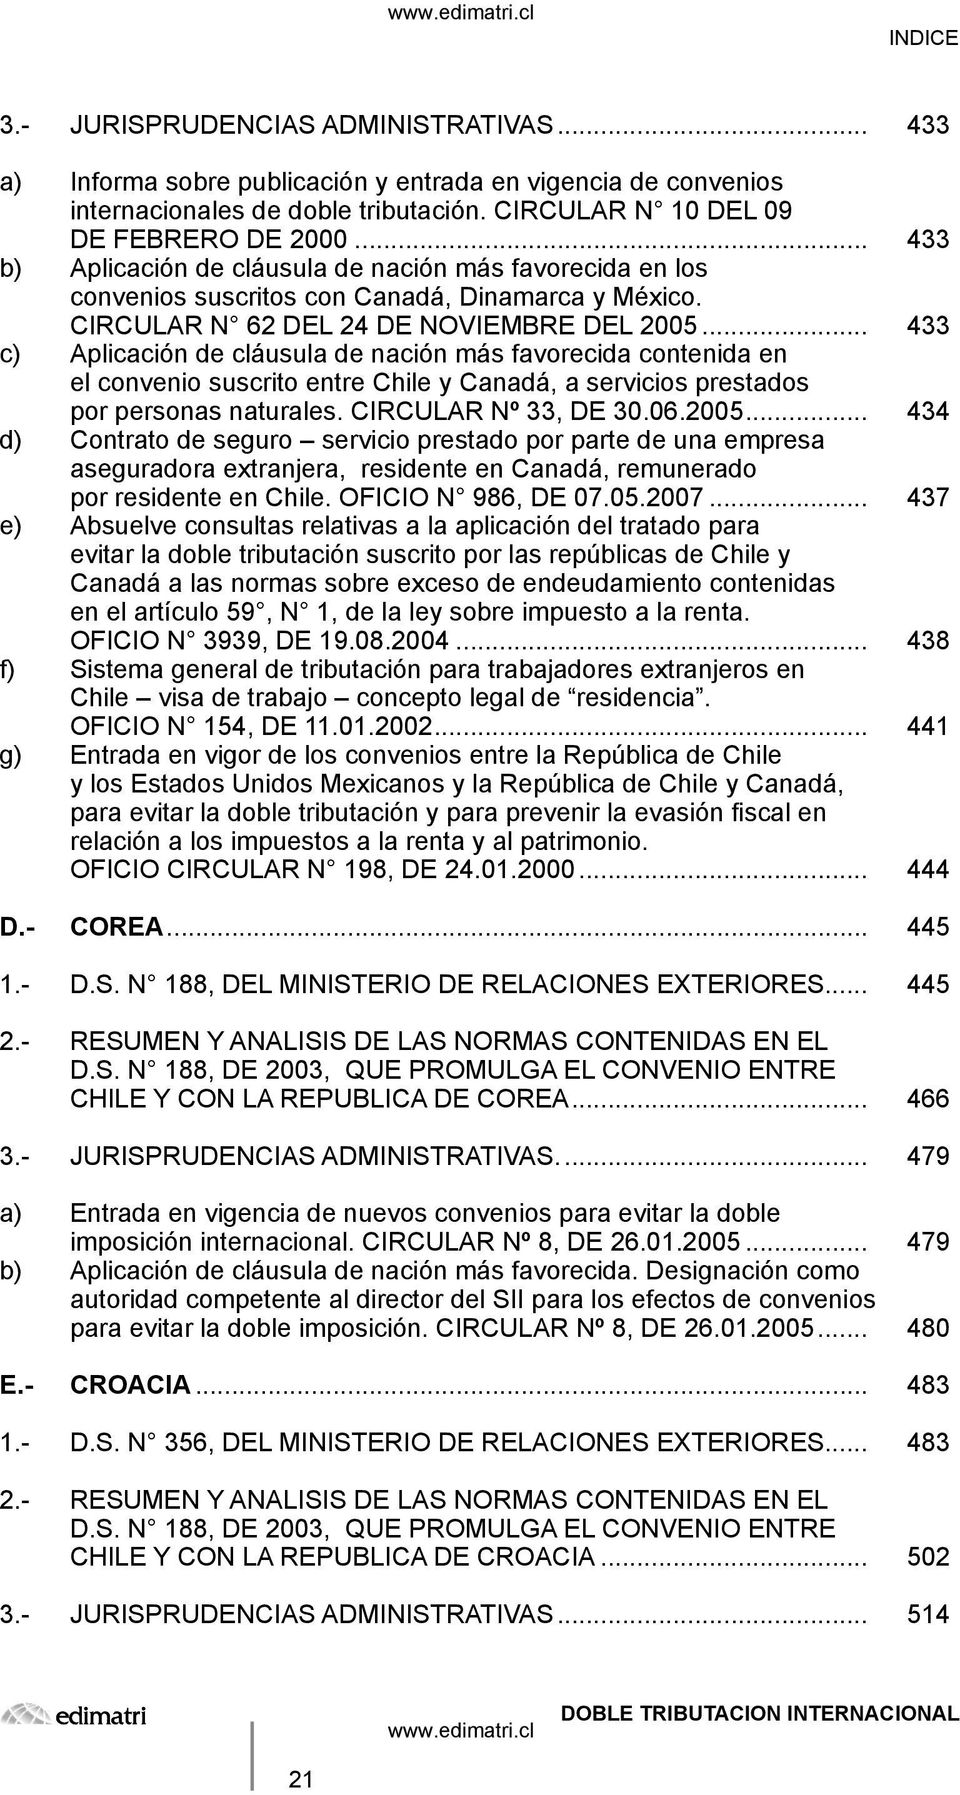 .. 433 c) Aplicación de cláusula de nación más favorecida contenida en el convenio suscrito entre Chile y Canadá, a servicios prestados por personas naturales. CIRCULAR Nº 33, DE 30.06.2005.